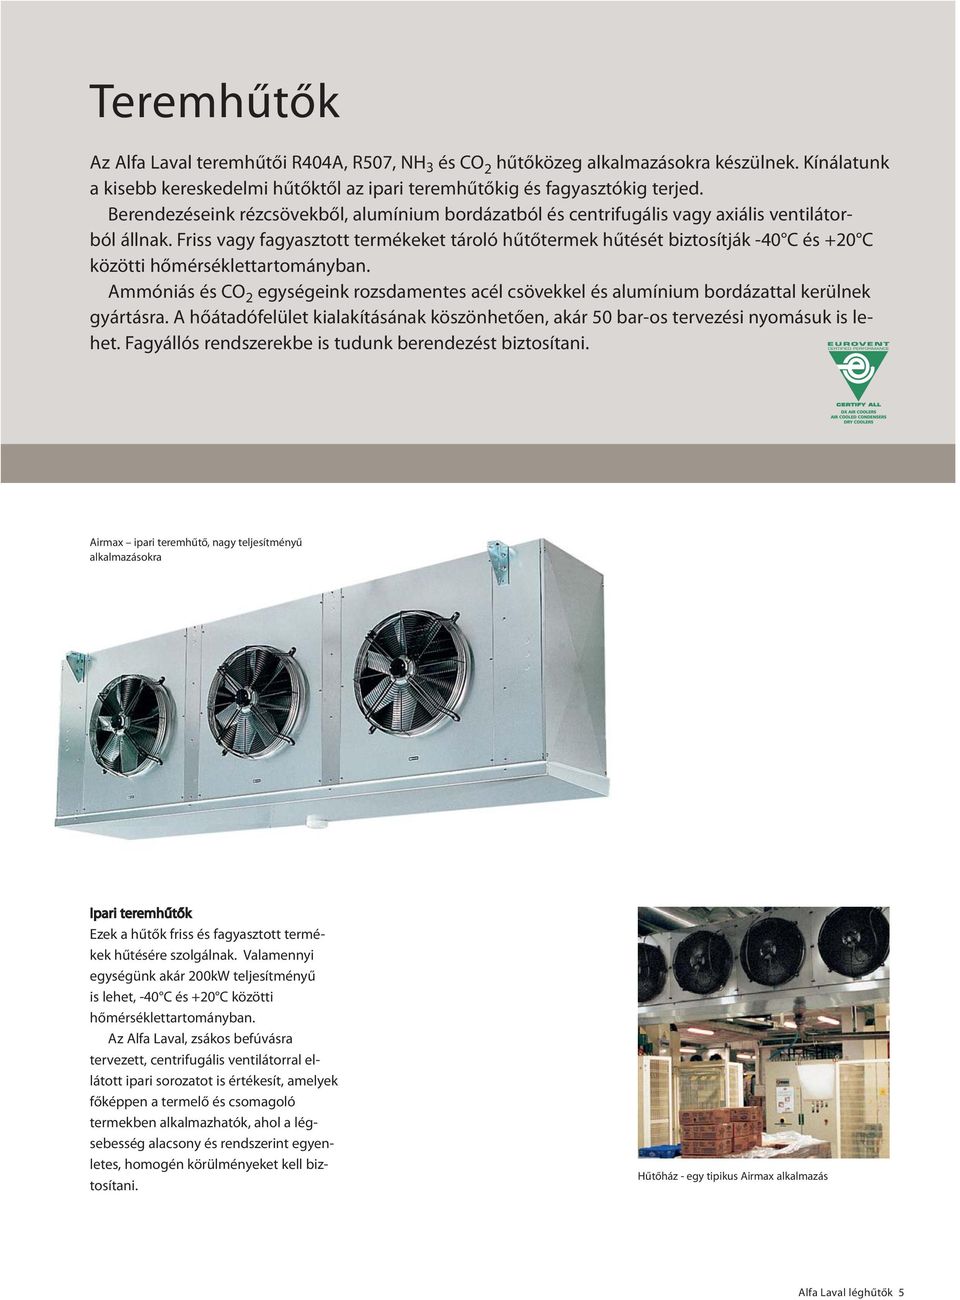 Friss vagy fagyasztott termékeket tároló hűtőtermek hűtését biztosítják -40 C és +20 C közötti hőmérséklettartományban.